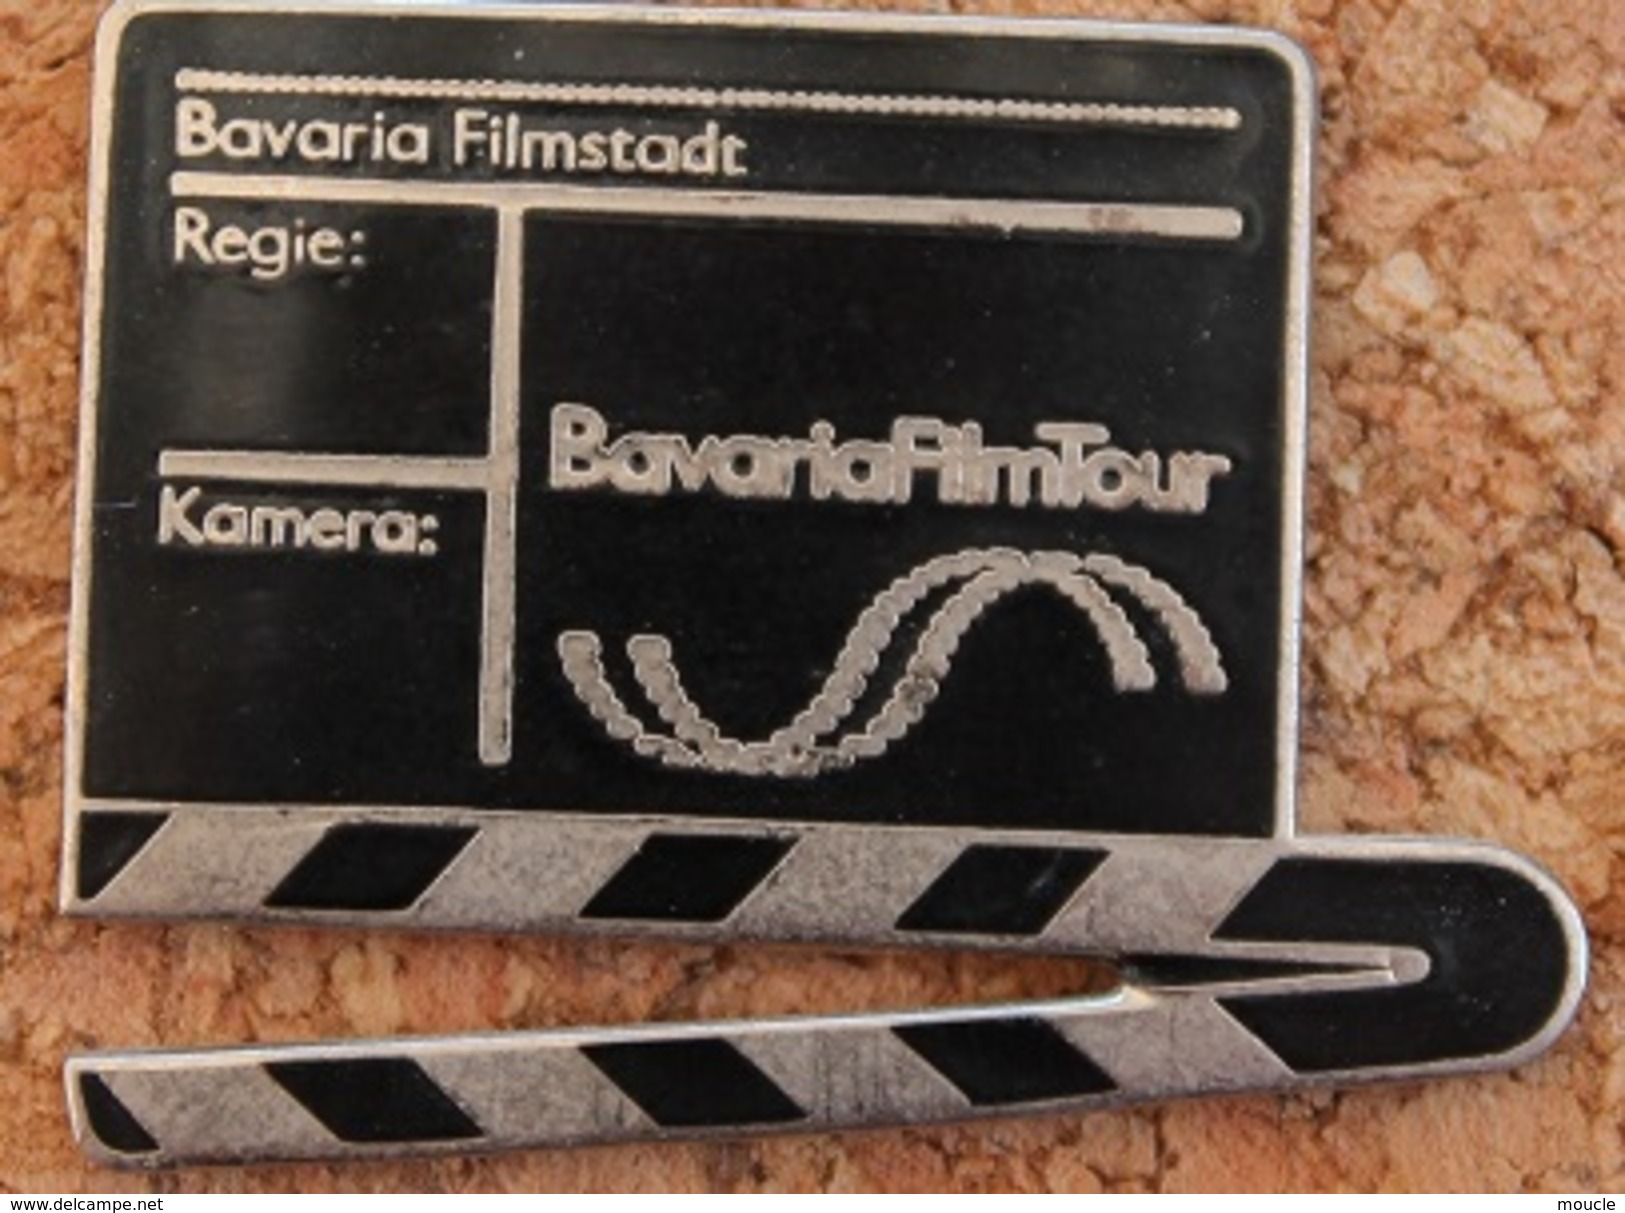 CLAP DE FILM - BAVARIAFILMTOUR - BAVARIA FILMSTADT - REGIE - KAMERA -     (16) - Cinéma